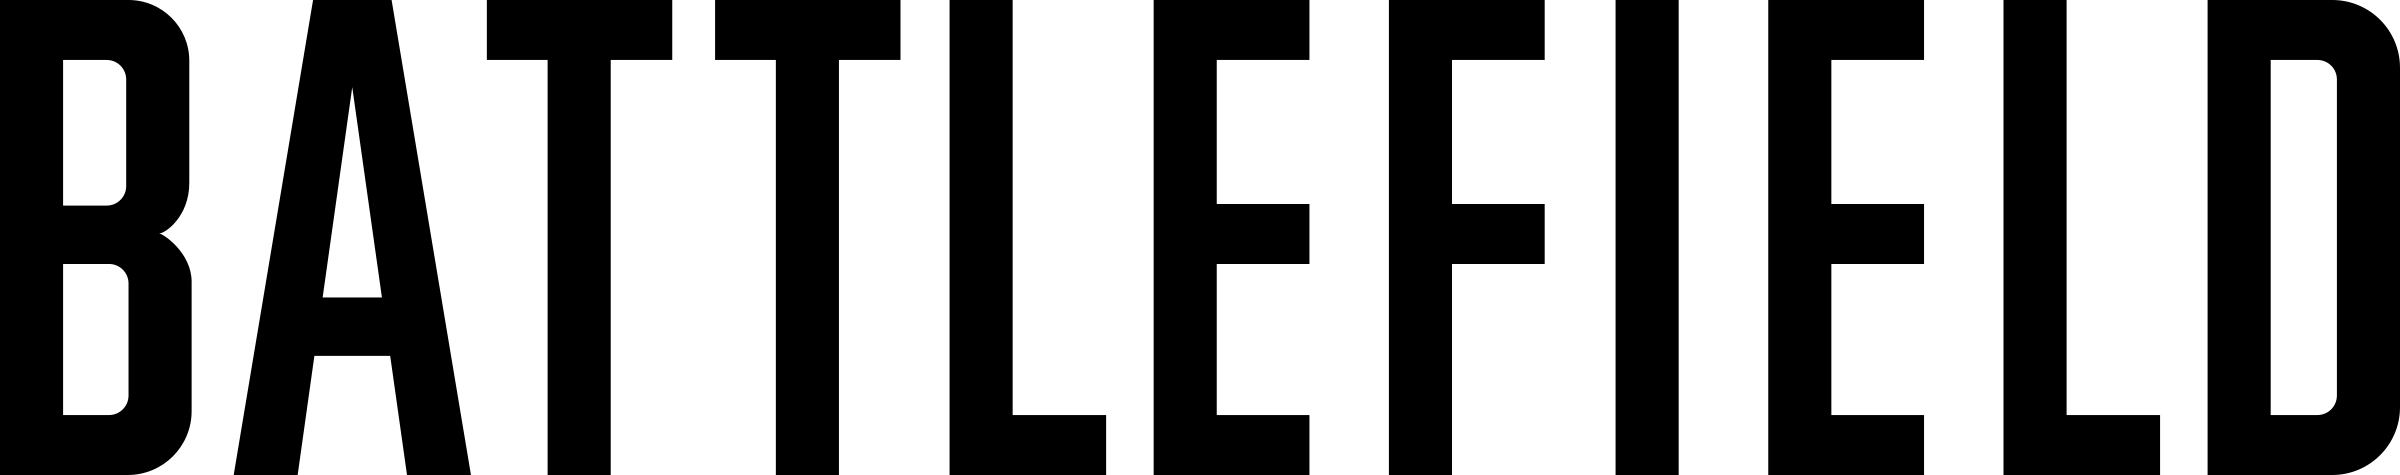 Battlefield Logo Background PNG Image